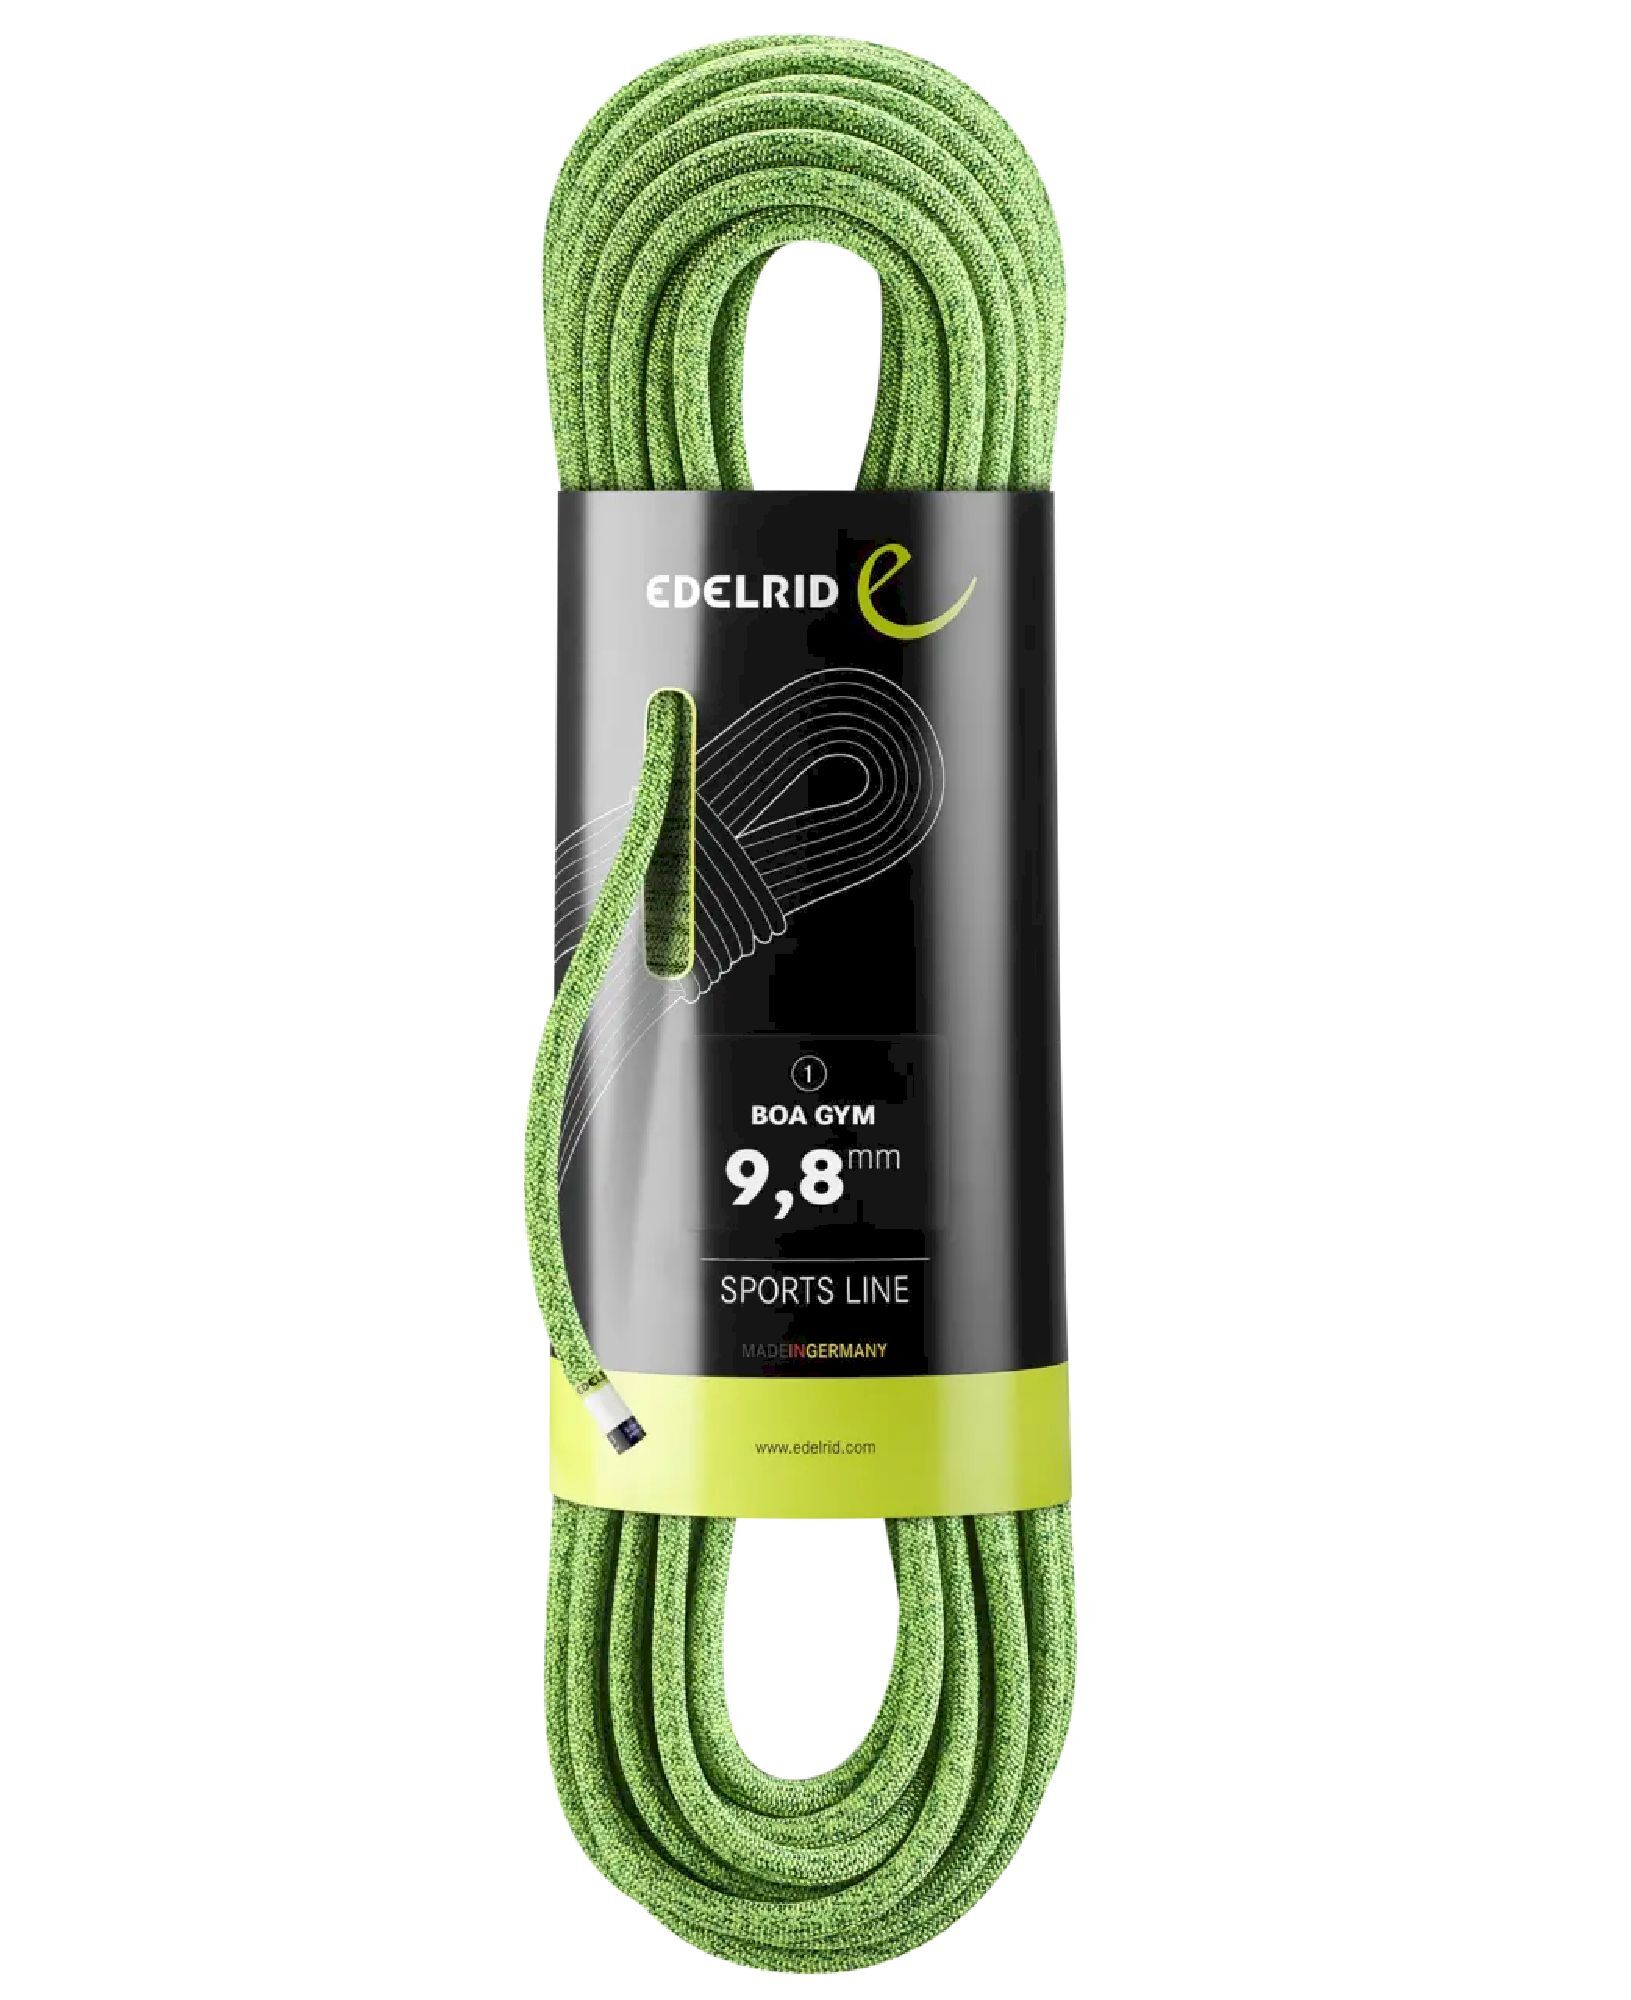 Edelrid Boa Gym 9,8mm - Single rope | Hardloop